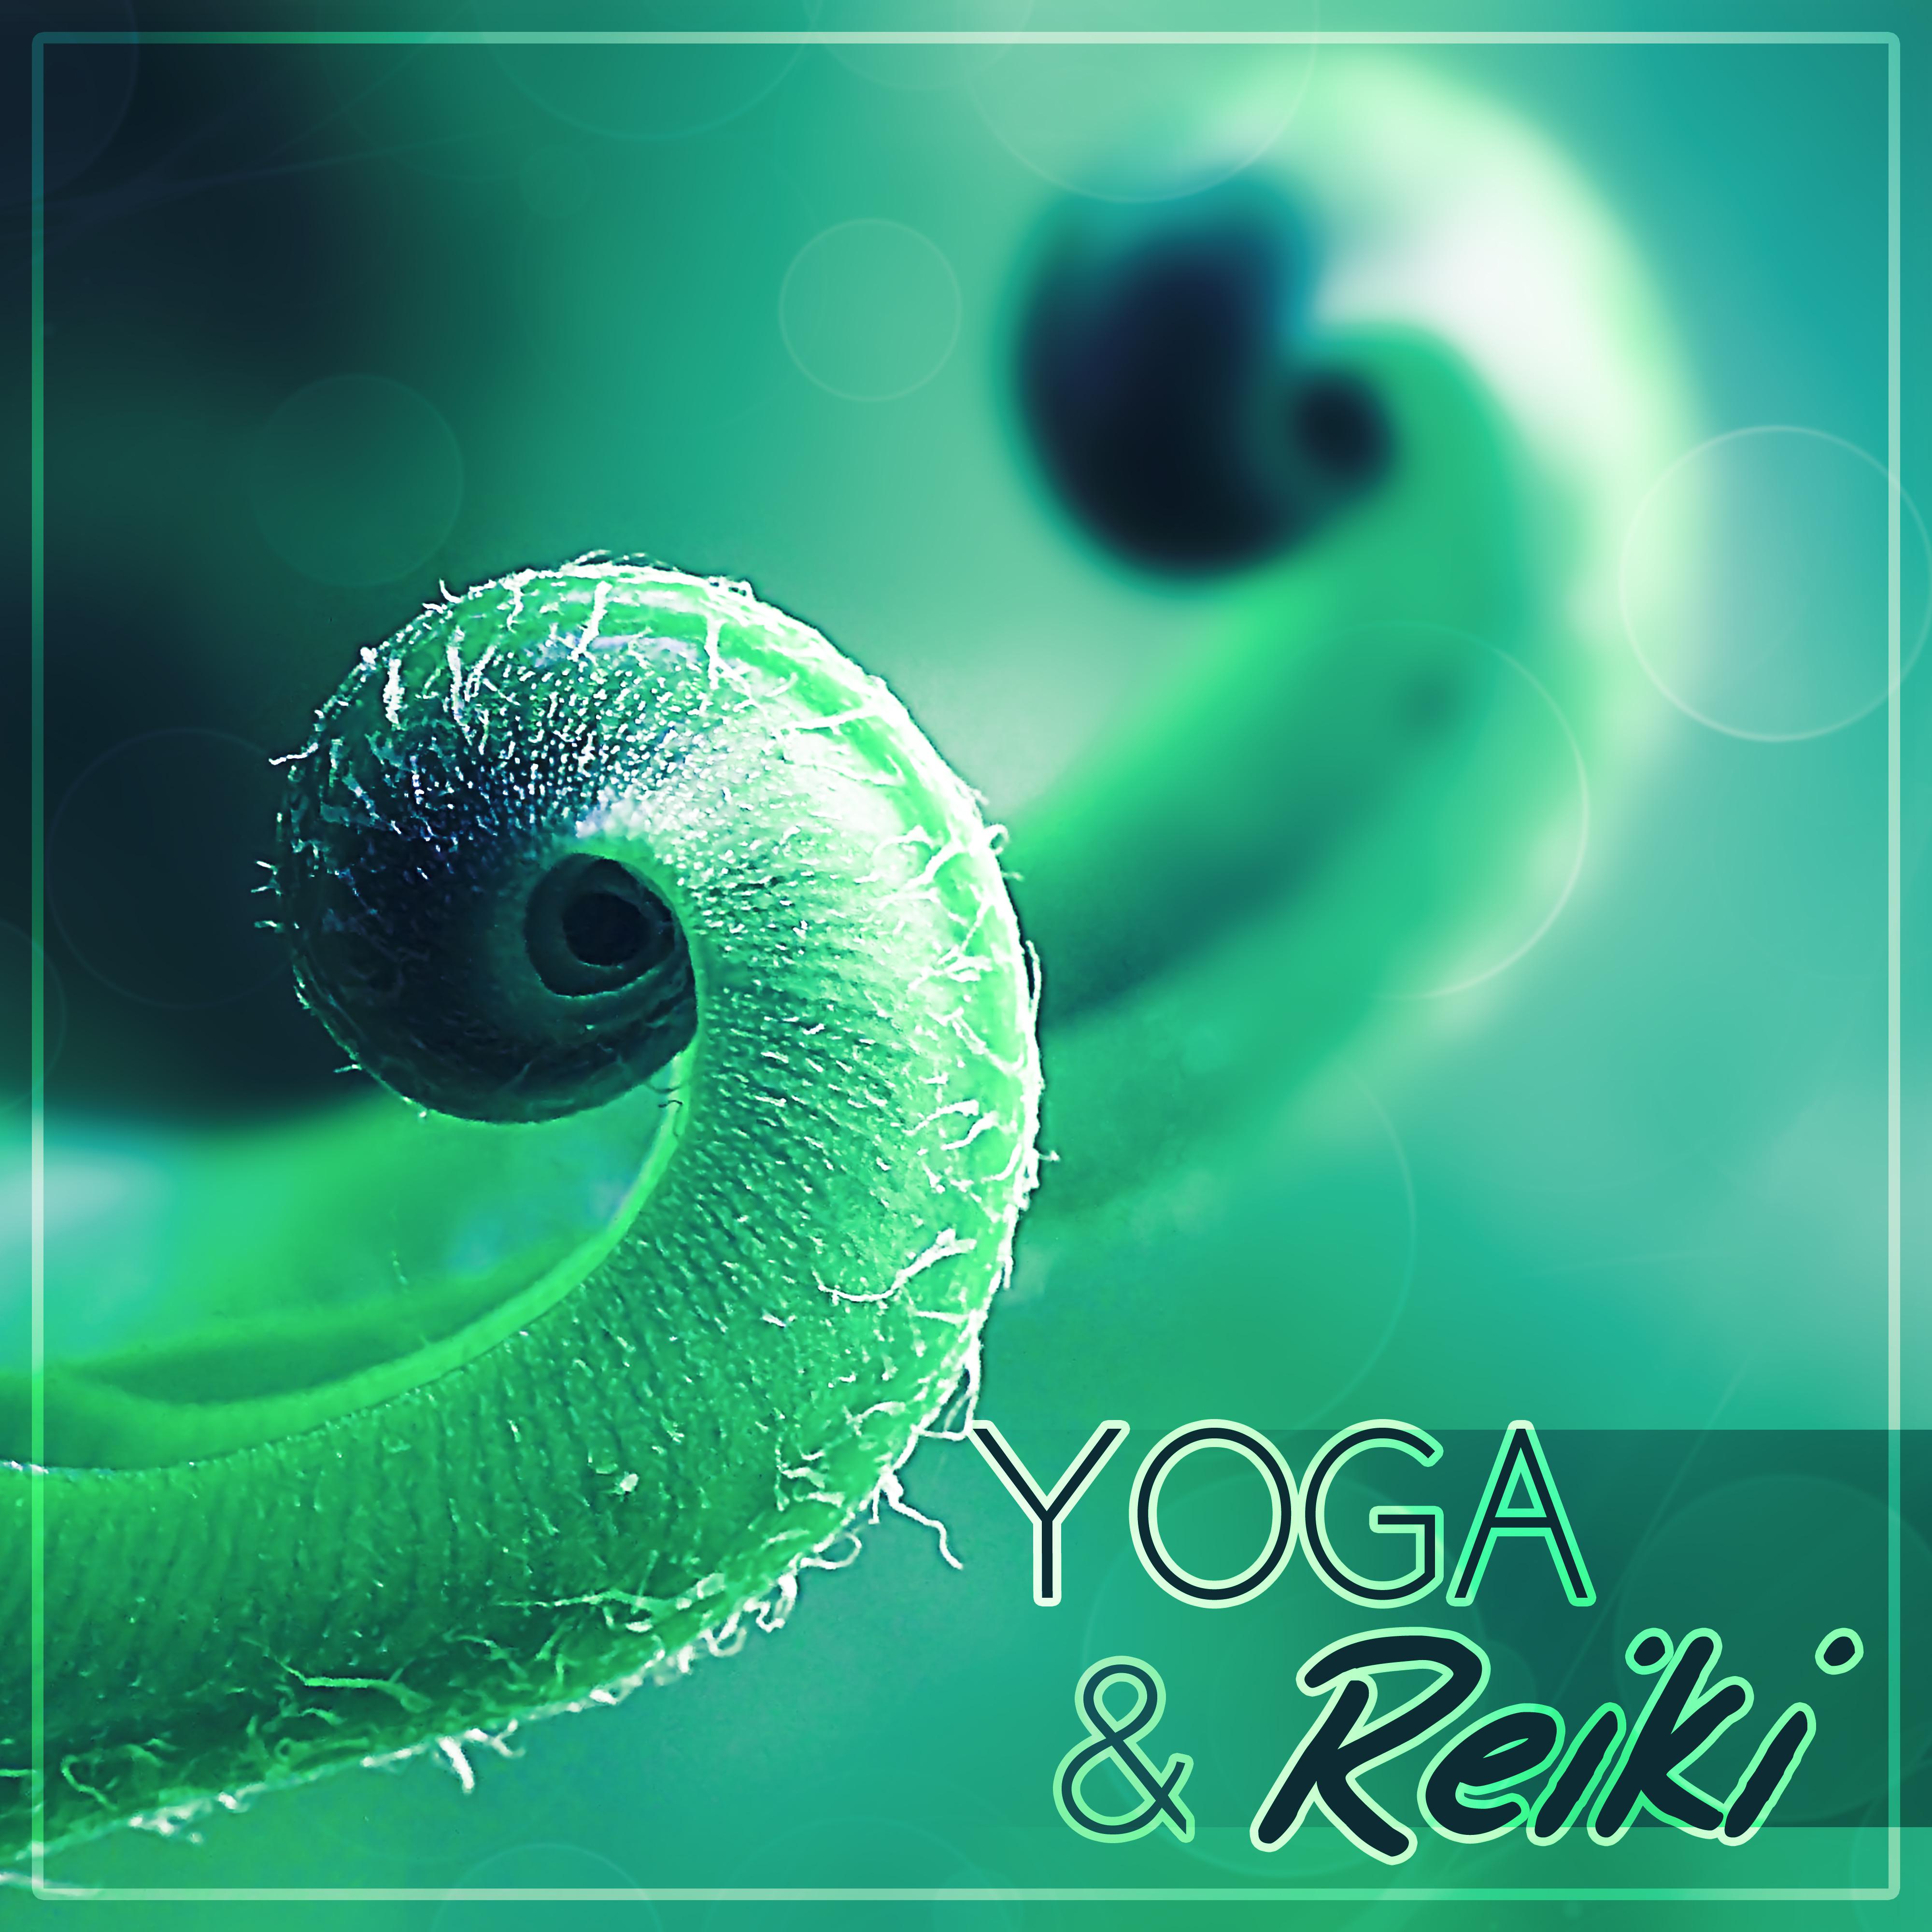 Yoga & Reiki – Meditation Music, Yoga, Reiki, Relaxation Music